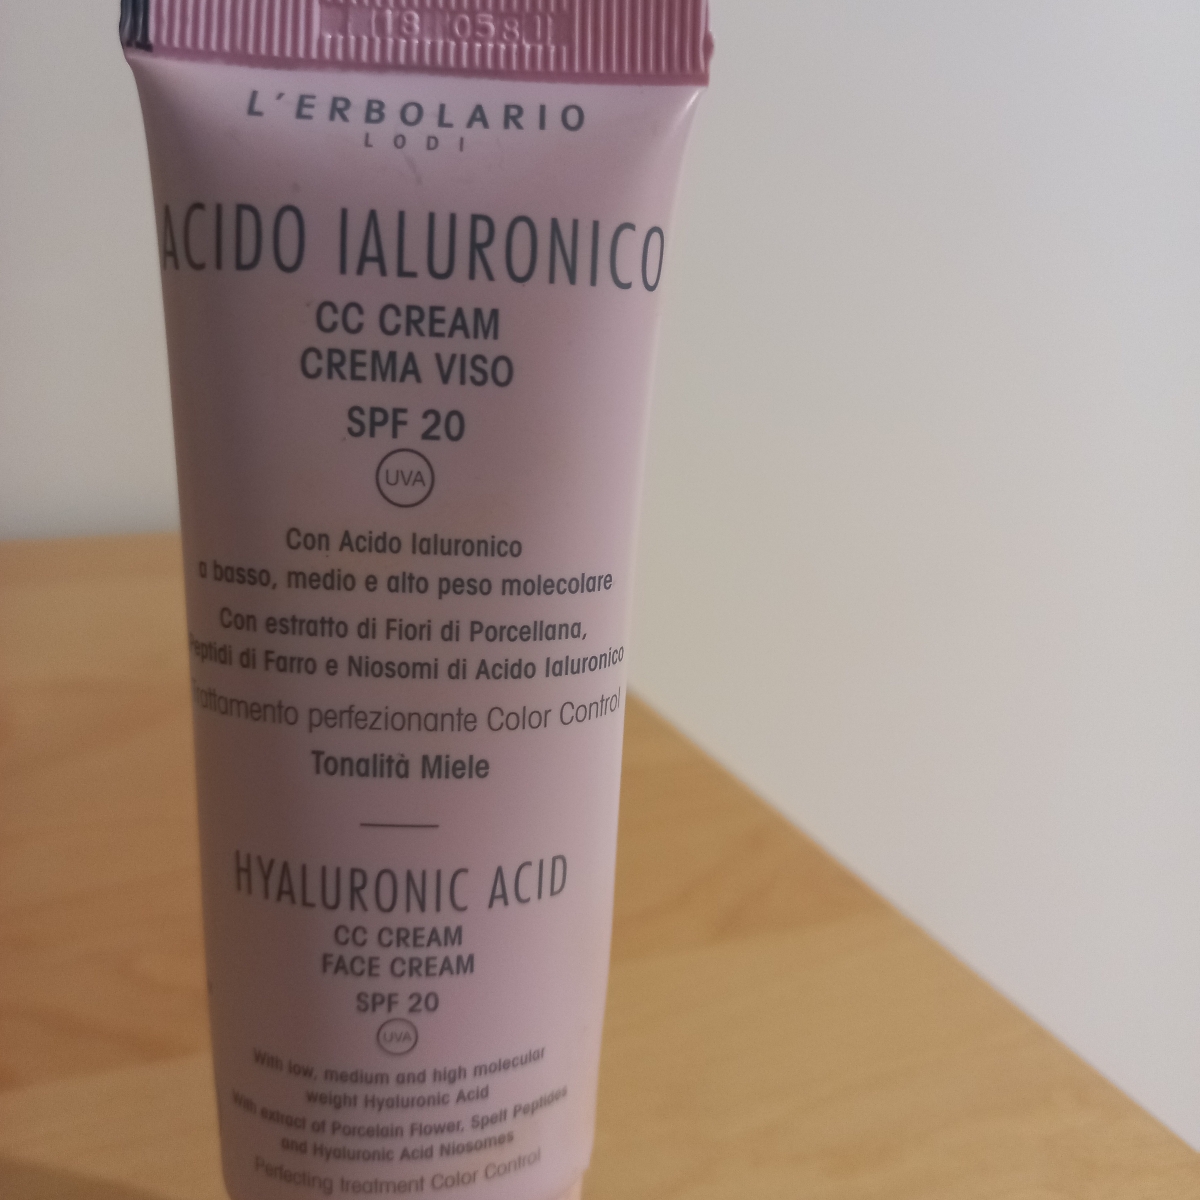 L'Erbolario Acido ialuronico cc cream crema viso SPF 20 Reviews | abillion